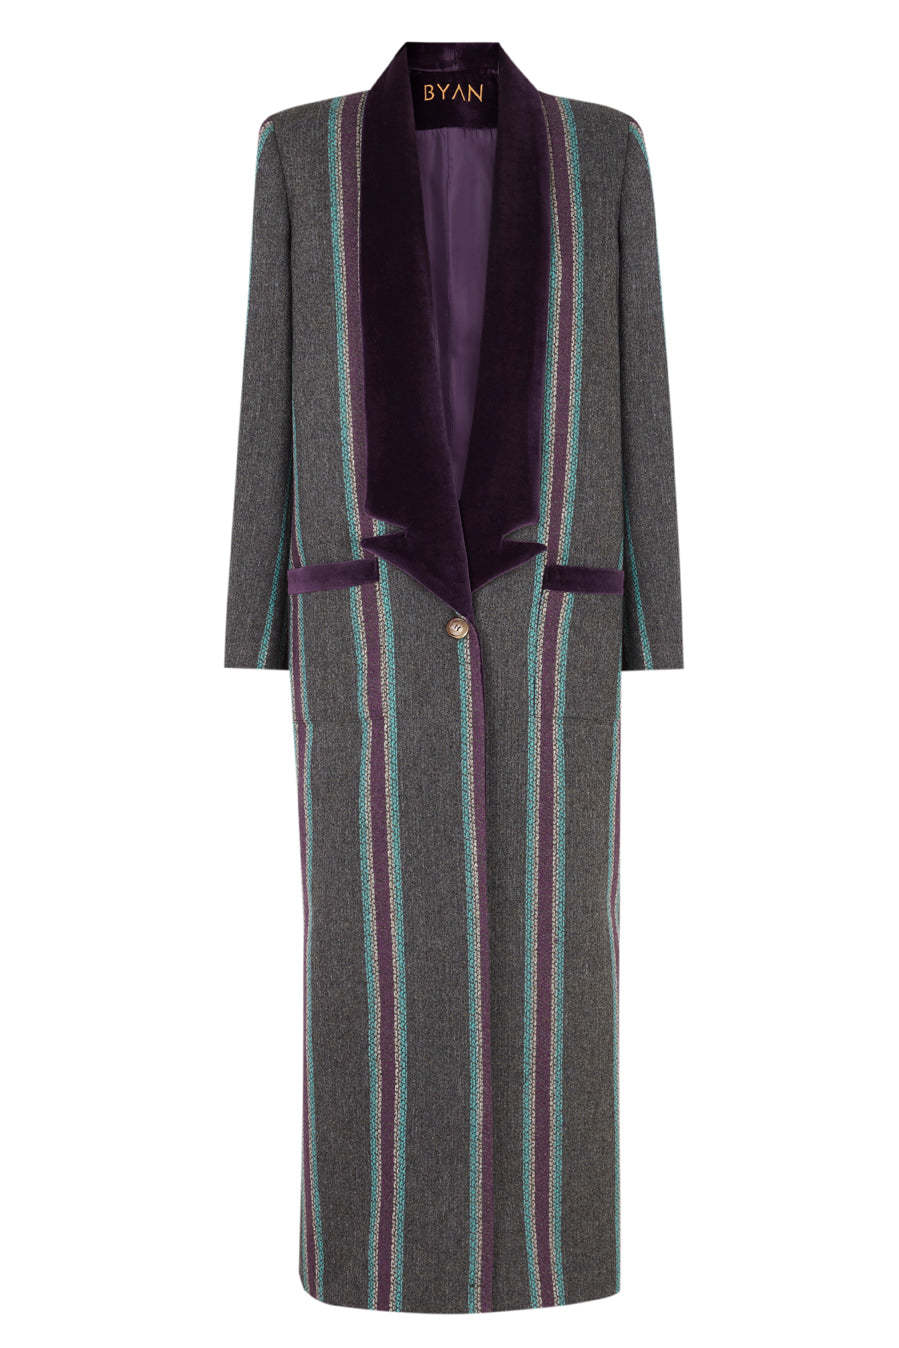 Abrigo de lana de rayas con solapas invertidas, modelo Oliver de Byan (310 euros).